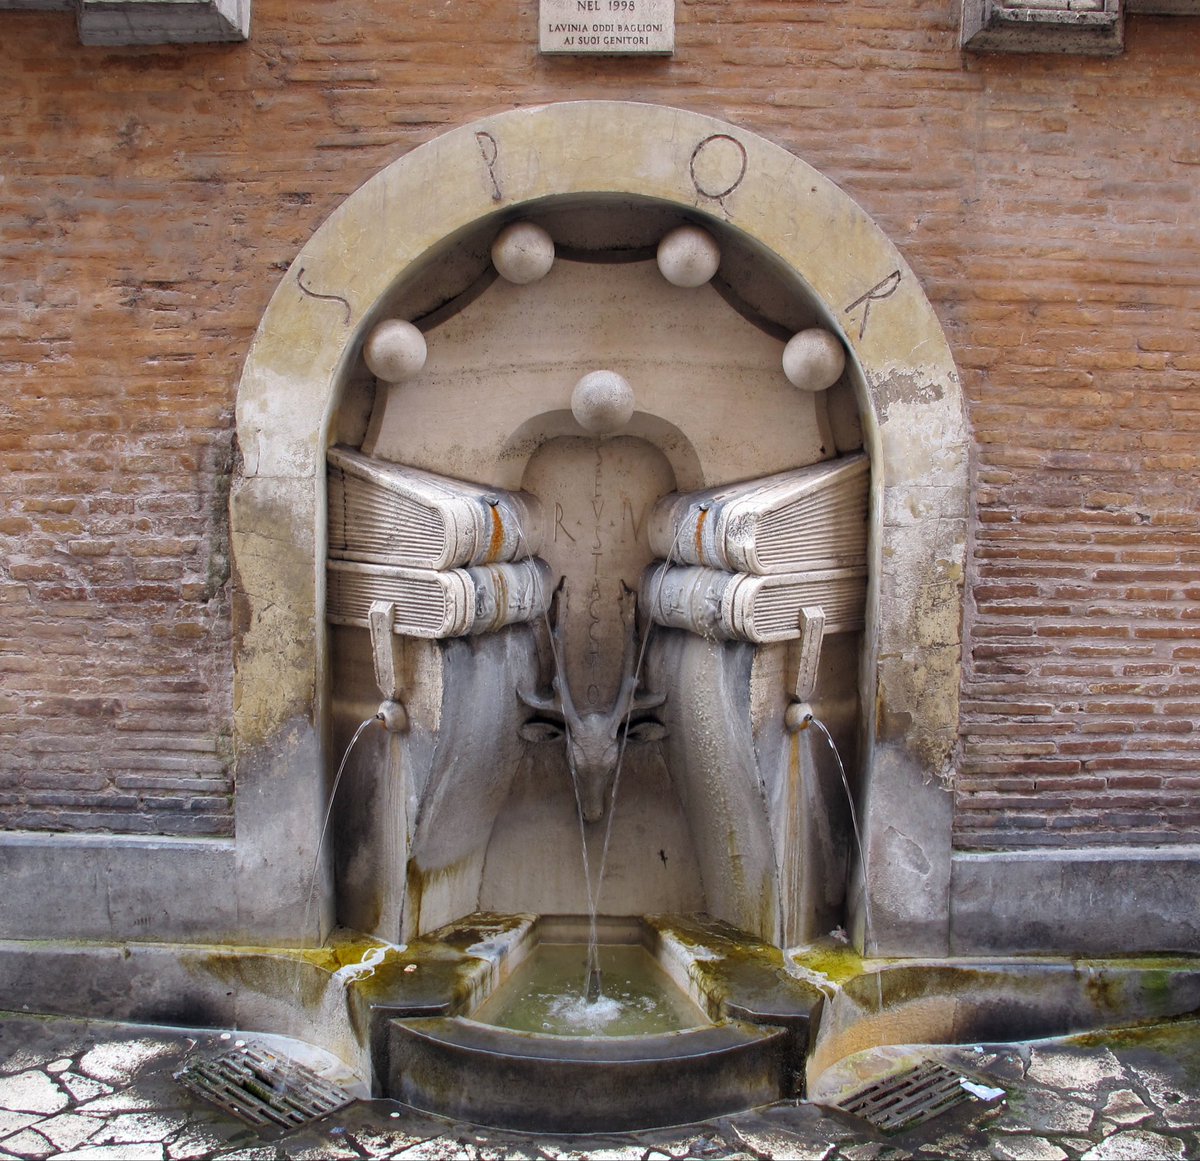 La Fontana dei libri a Roma fu eseguita nel 1927 da Pietro Lombardi per celebrare il rione Sant’Eustachio.

#FotoConLibri a #CasaLettori